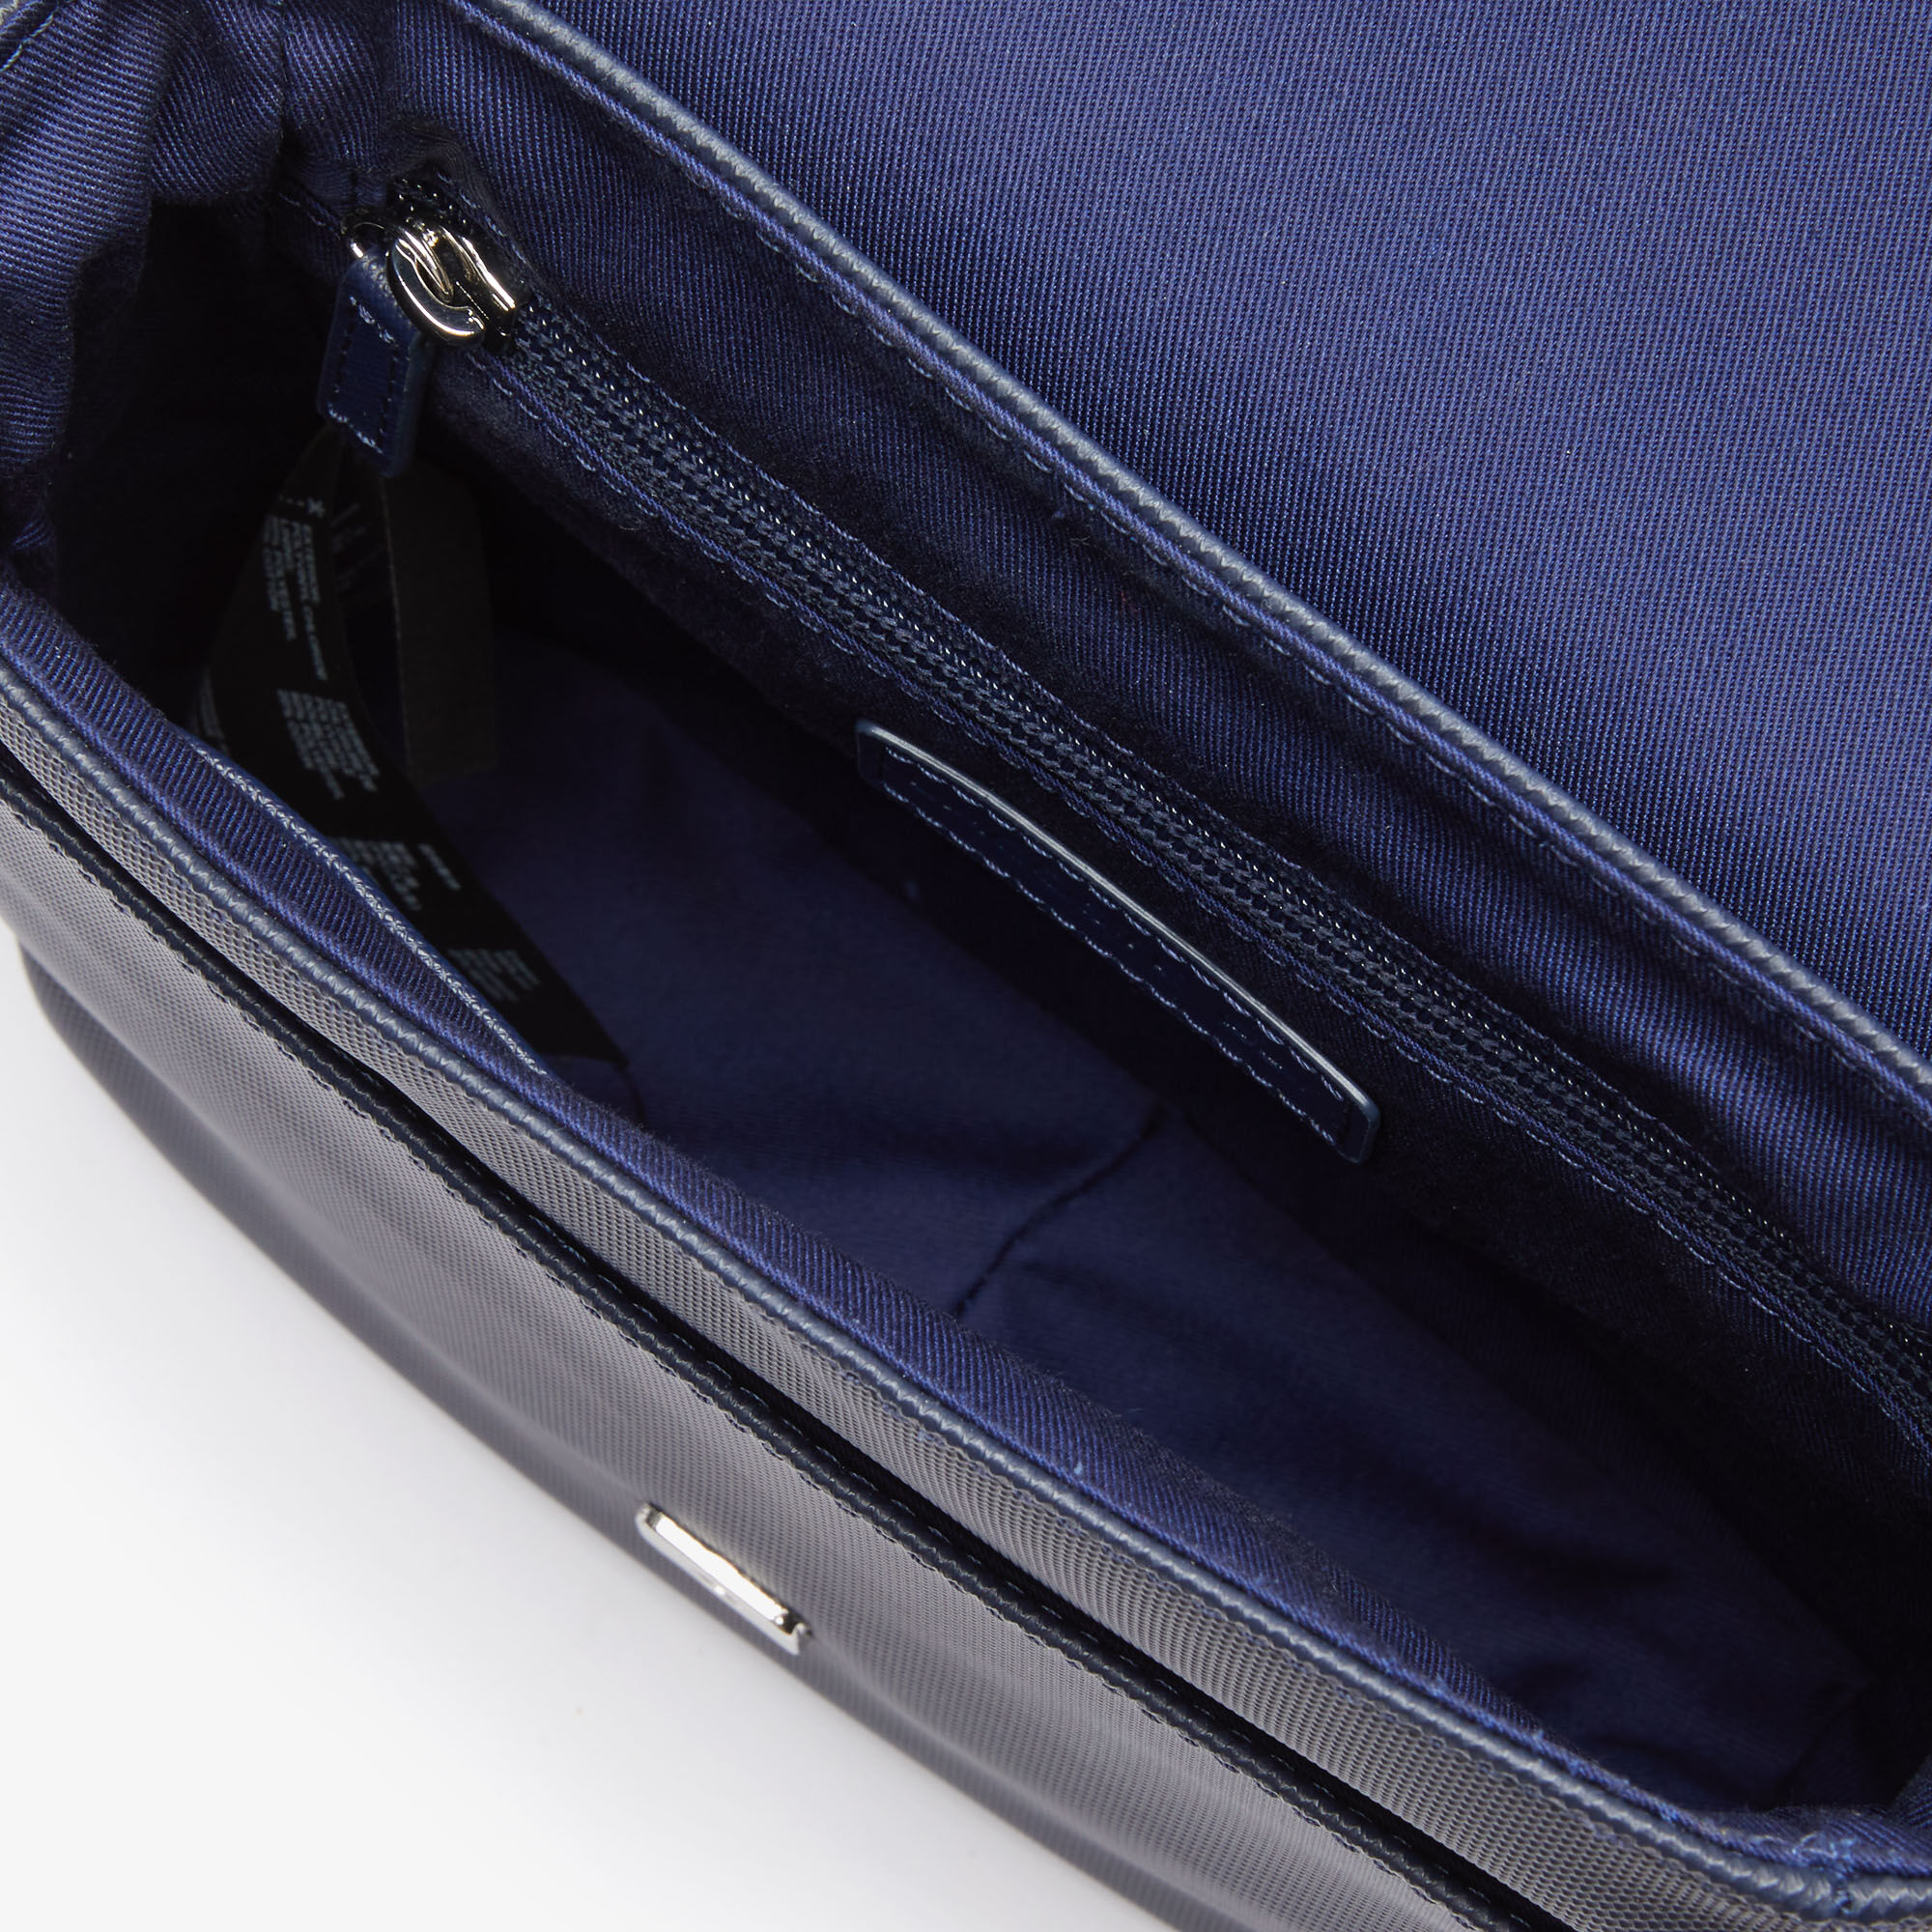 Men's Classic Petit Piqué Flap Bag